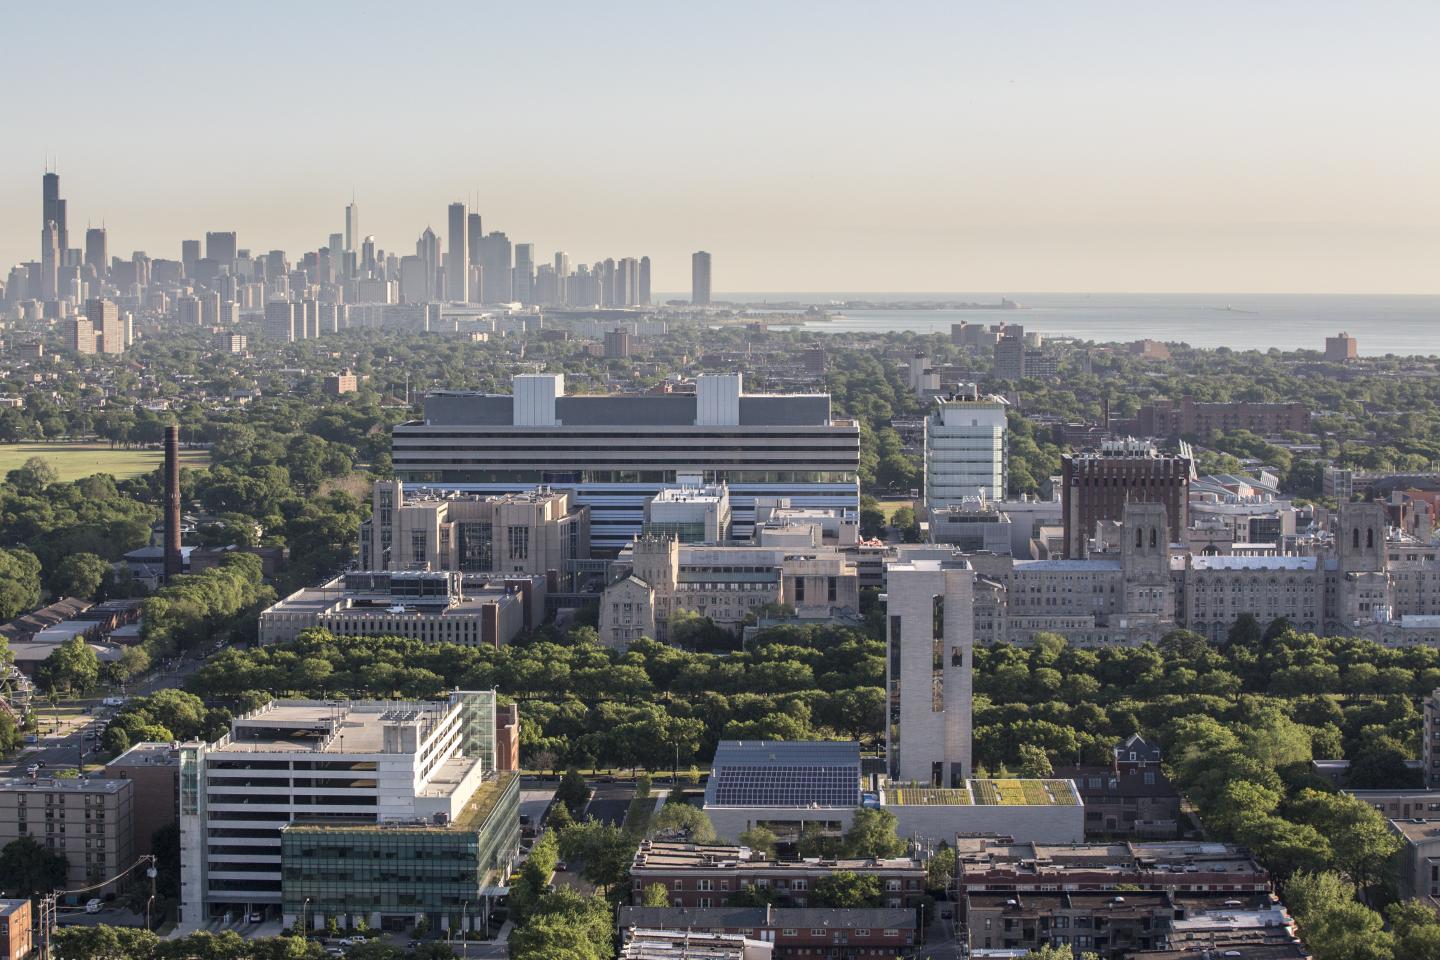 University of Chicago Medicine Campus